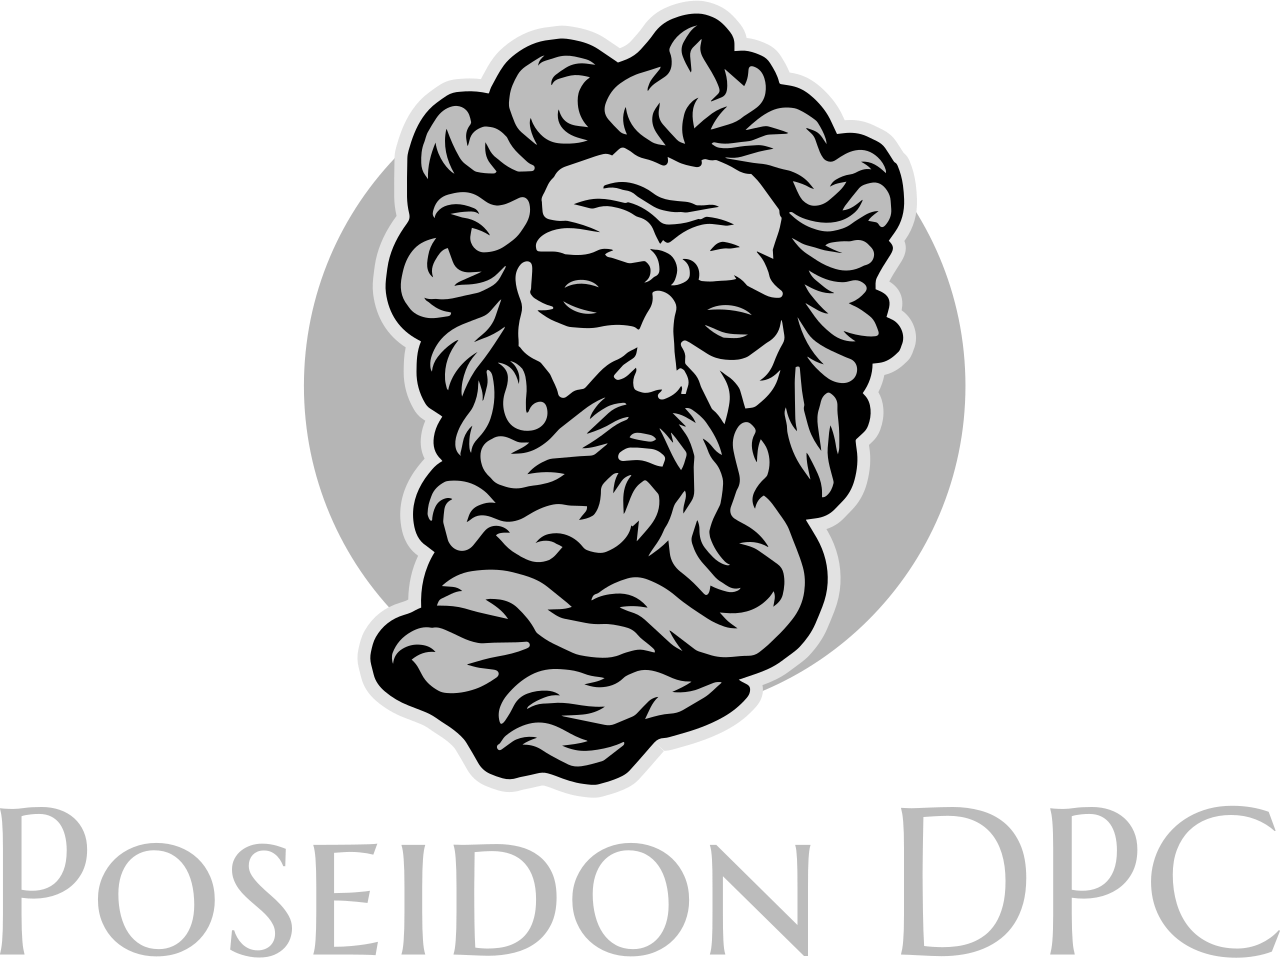 Poseidon DPC's web page